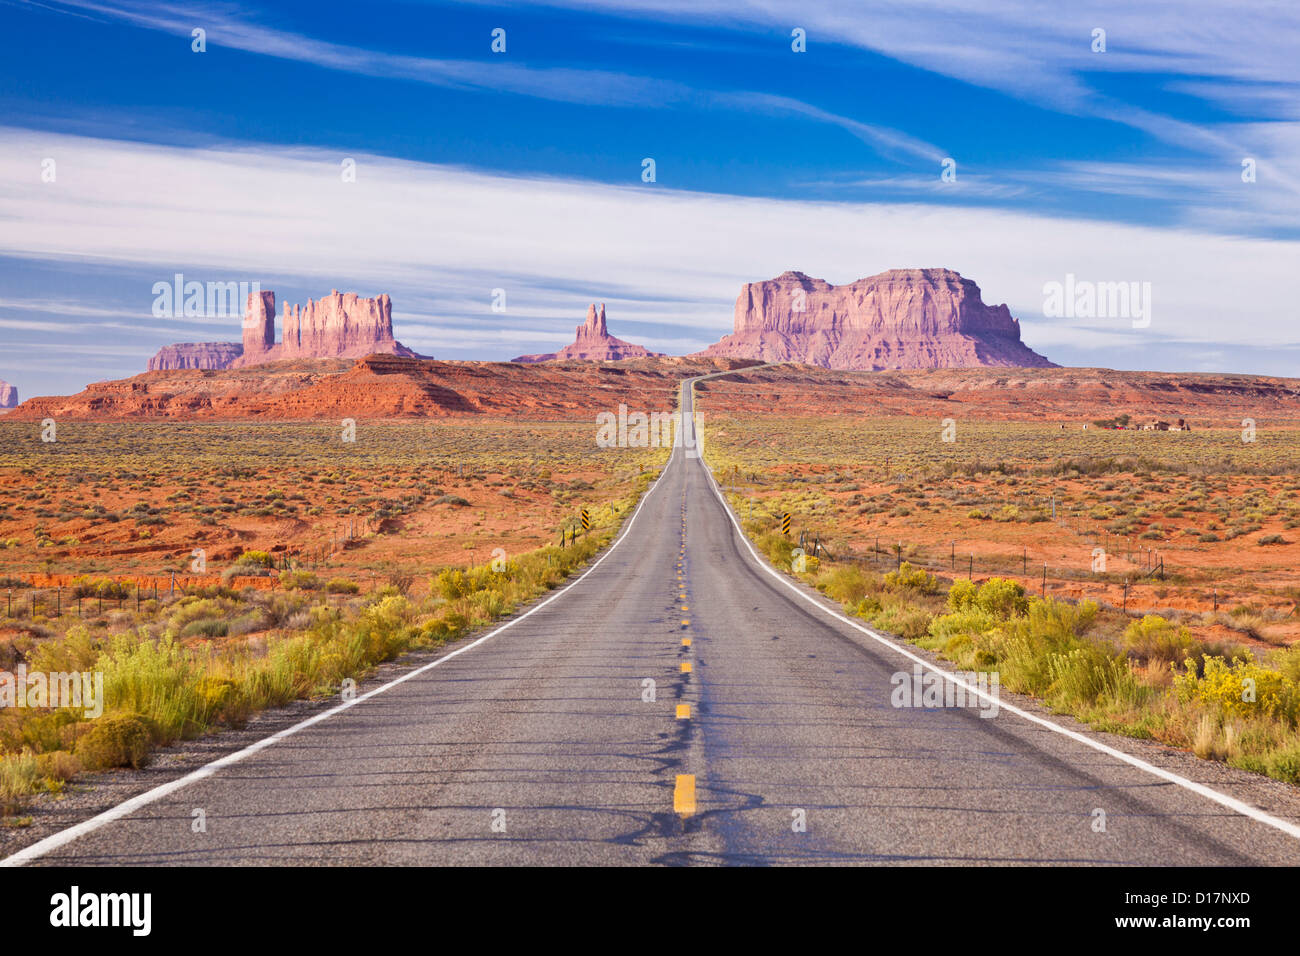 Image emblématique de la route de Monument Valley Navajo Tribal Park, Utah USA United States of America Banque D'Images